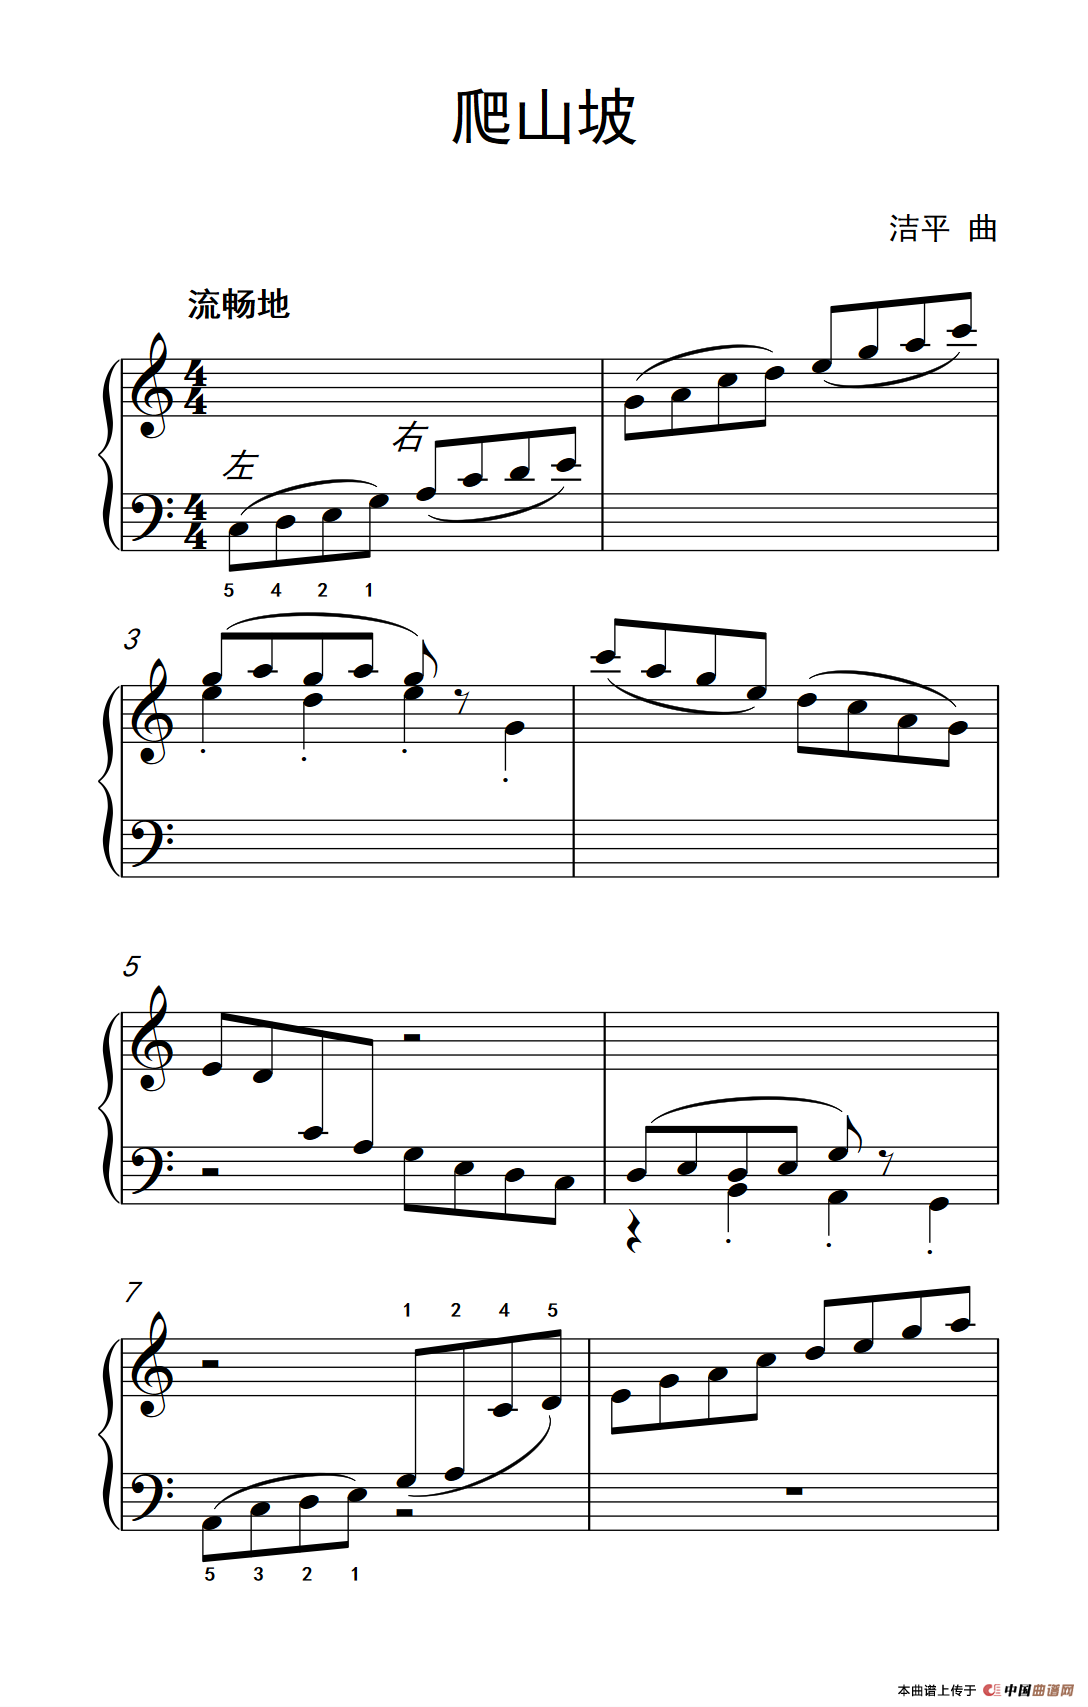 《爬山坡》钢琴曲谱图分享